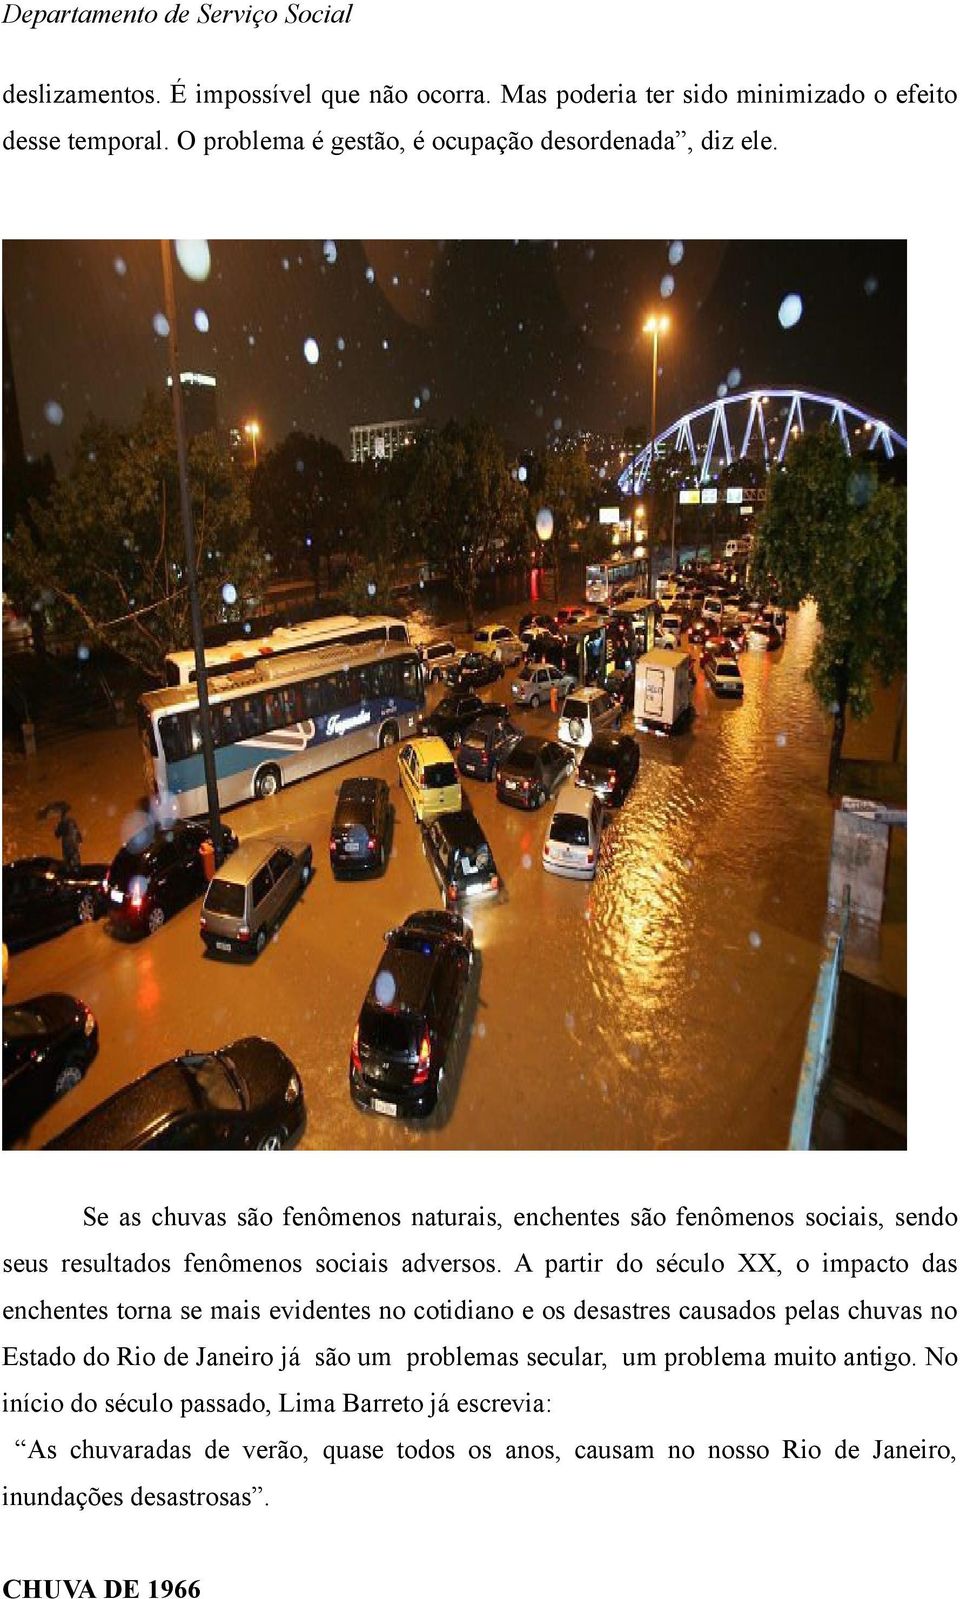 A partir do século XX, o impacto das enchentes torna se mais evidentes no cotidiano e os desastres causados pelas chuvas no Estado do Rio de Janeiro já são um